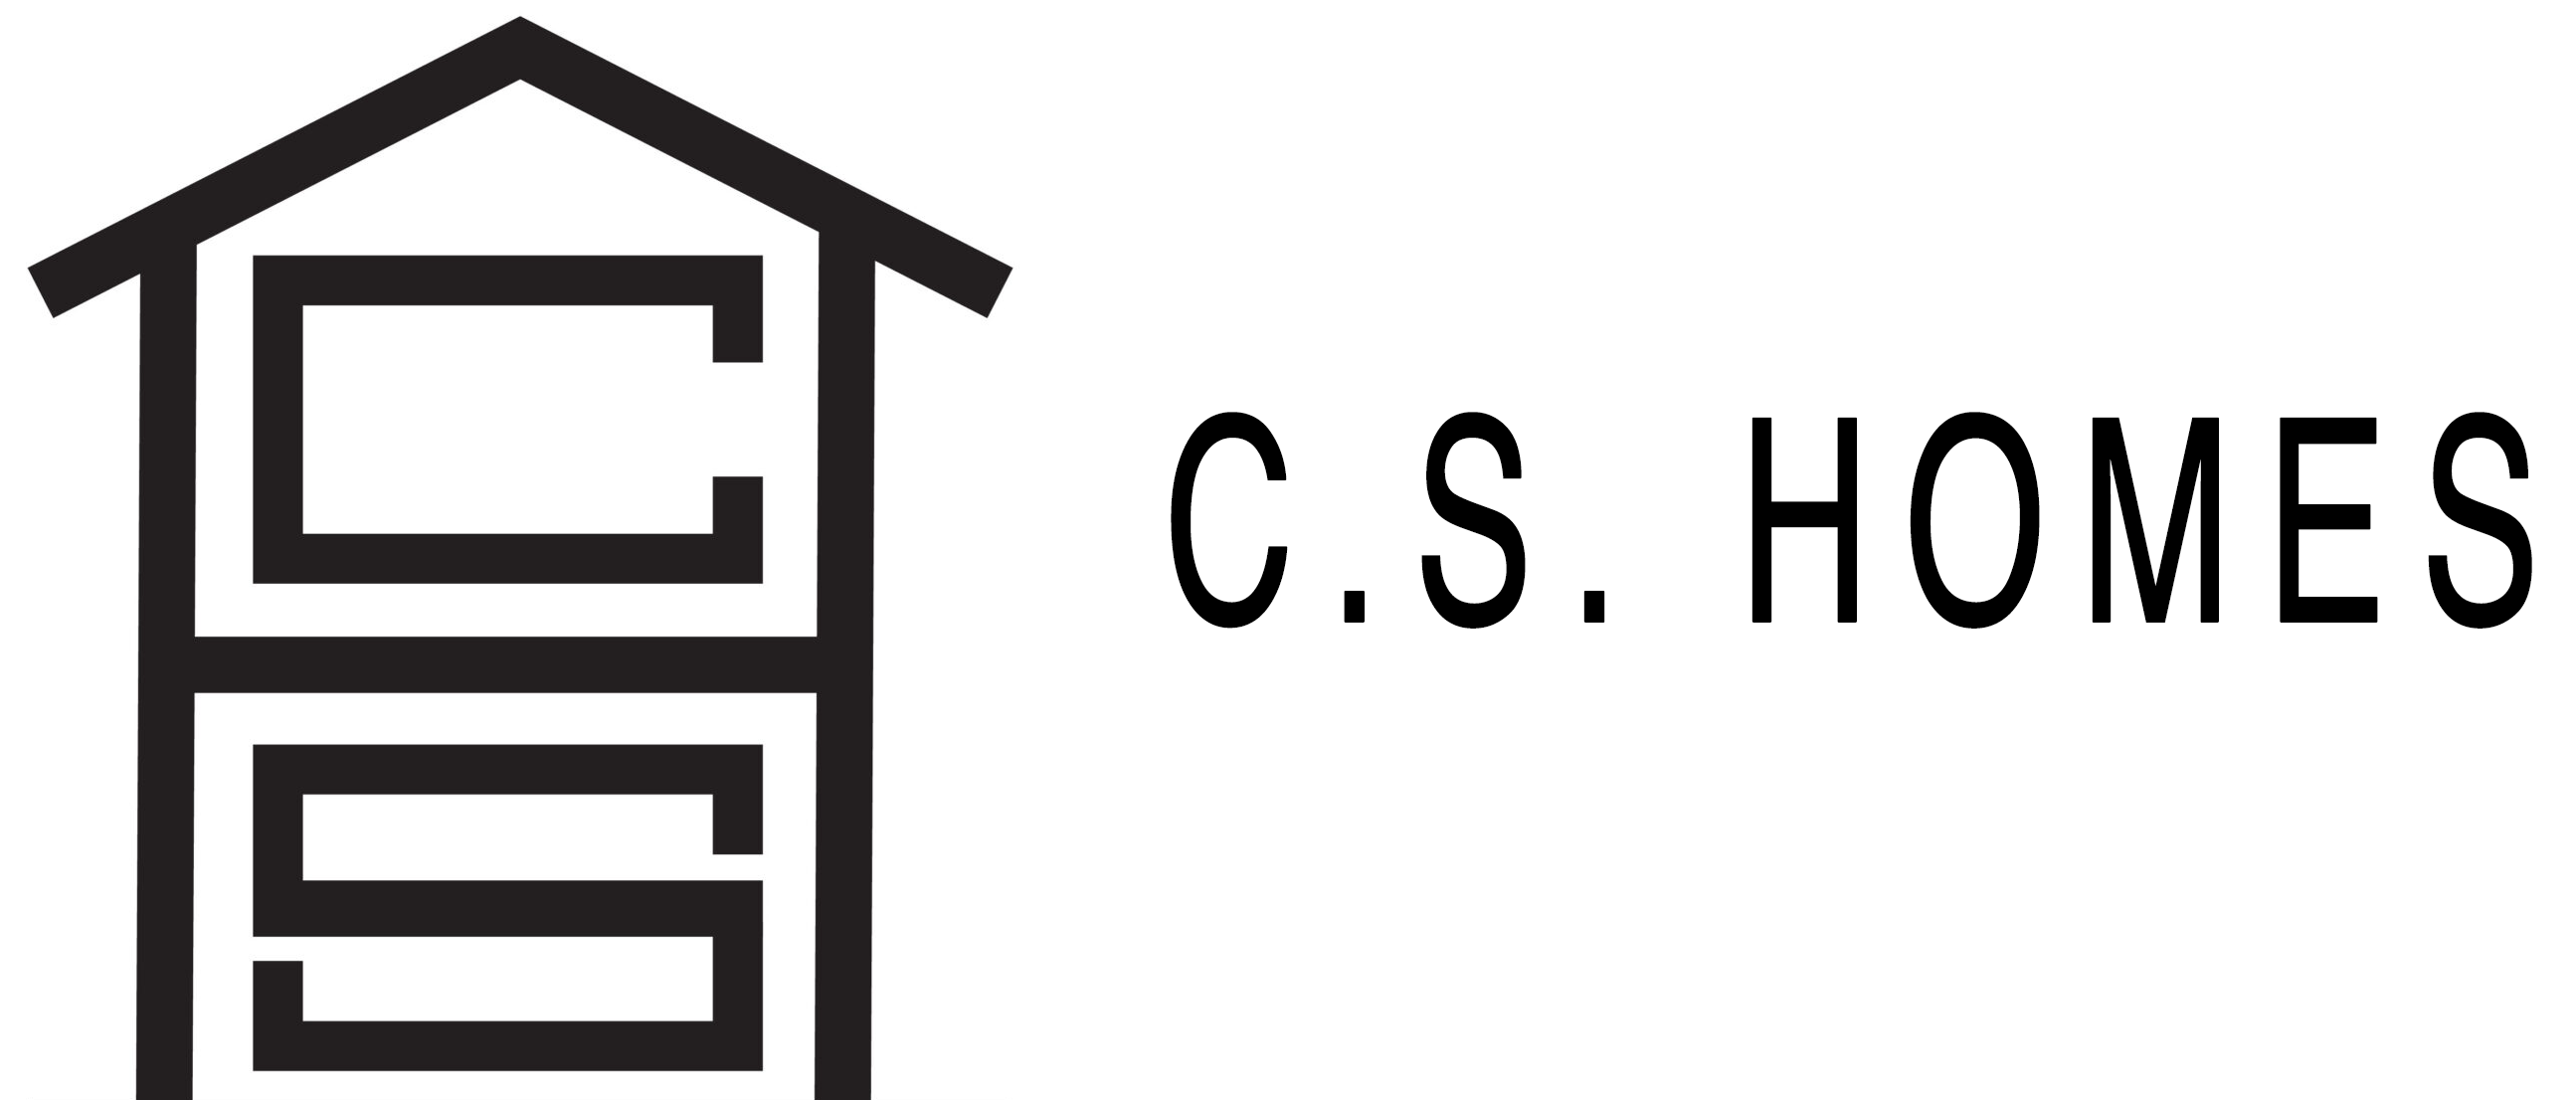 CS-Homes-label_v2_edited